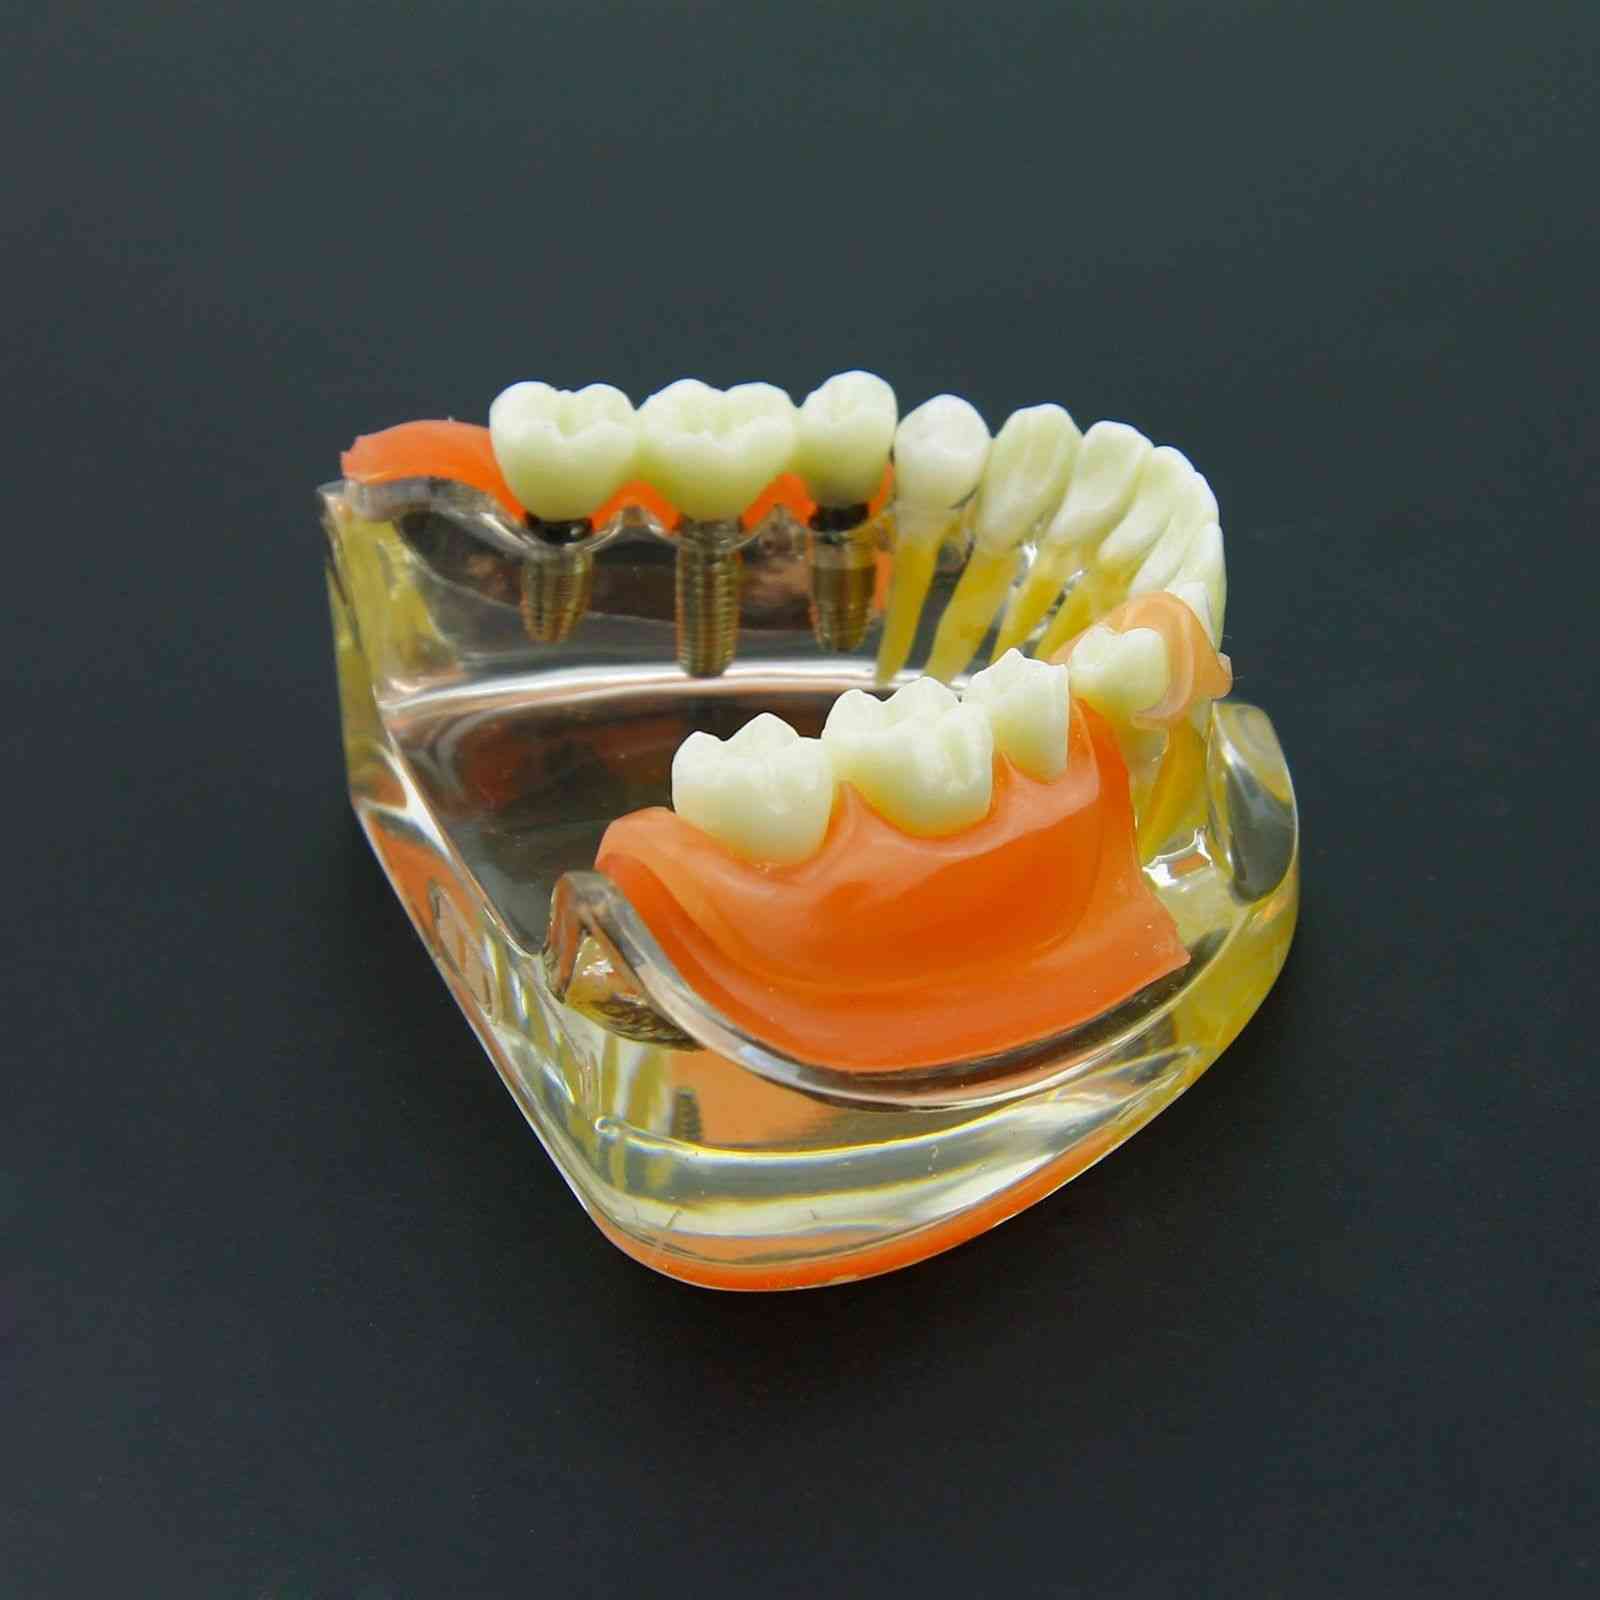 Zahnimplantat-Restaurationszähne Modell - Demo zur herausnehmbaren Brückenprothese